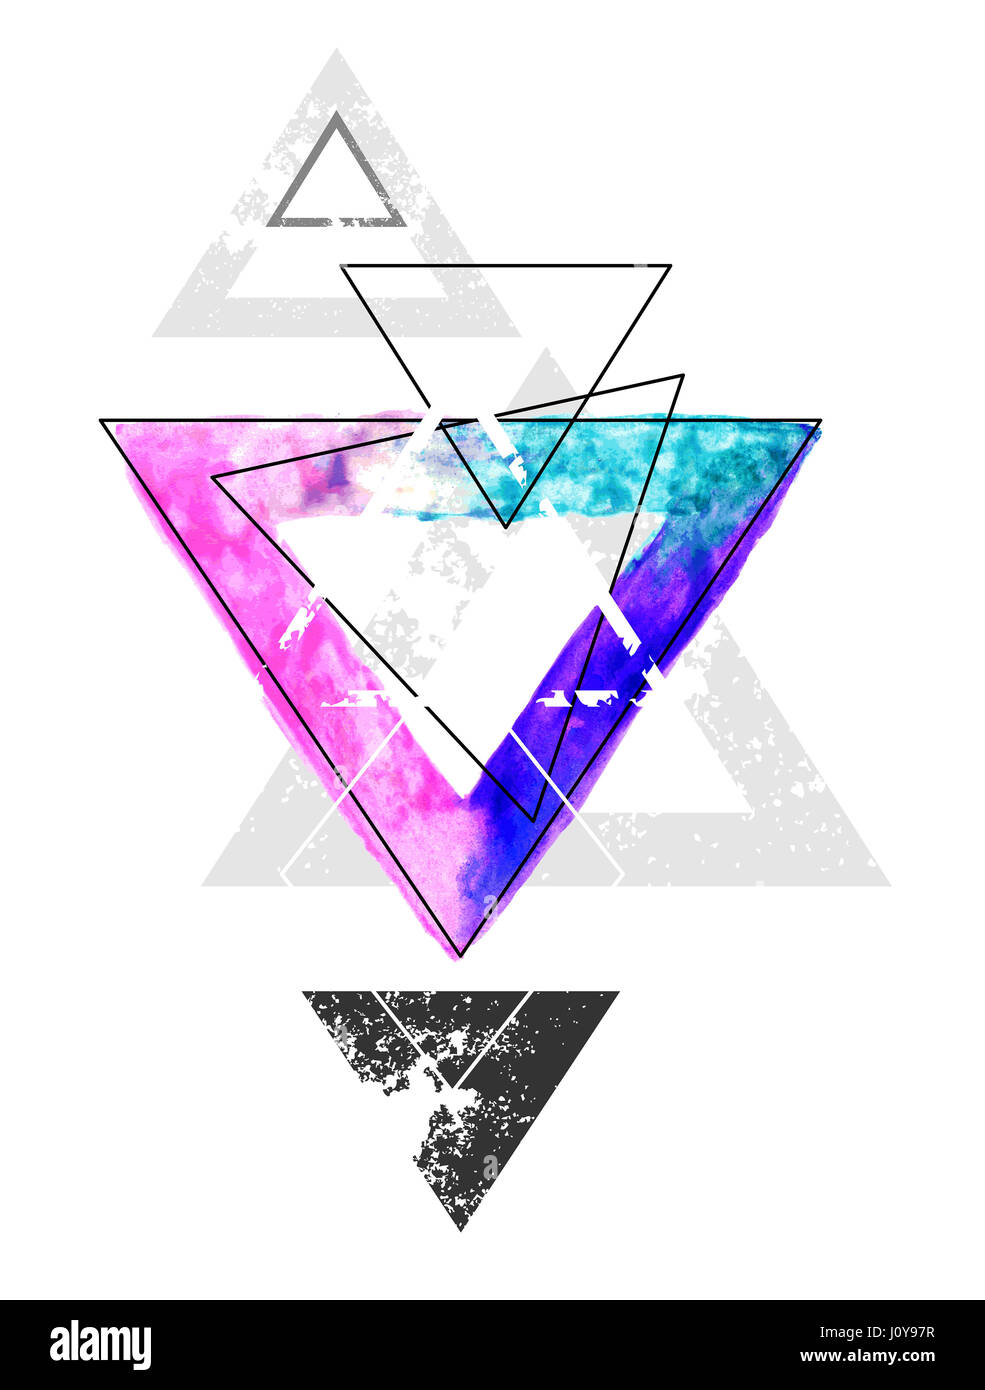 Zusammensetzung der geometrischen Formen mit einem Dreieck mit hellen Aquarellfarbe auf weißem Hintergrund gemalt. Aquarell Zeichnung. Tattoo-Stil. Stockfoto